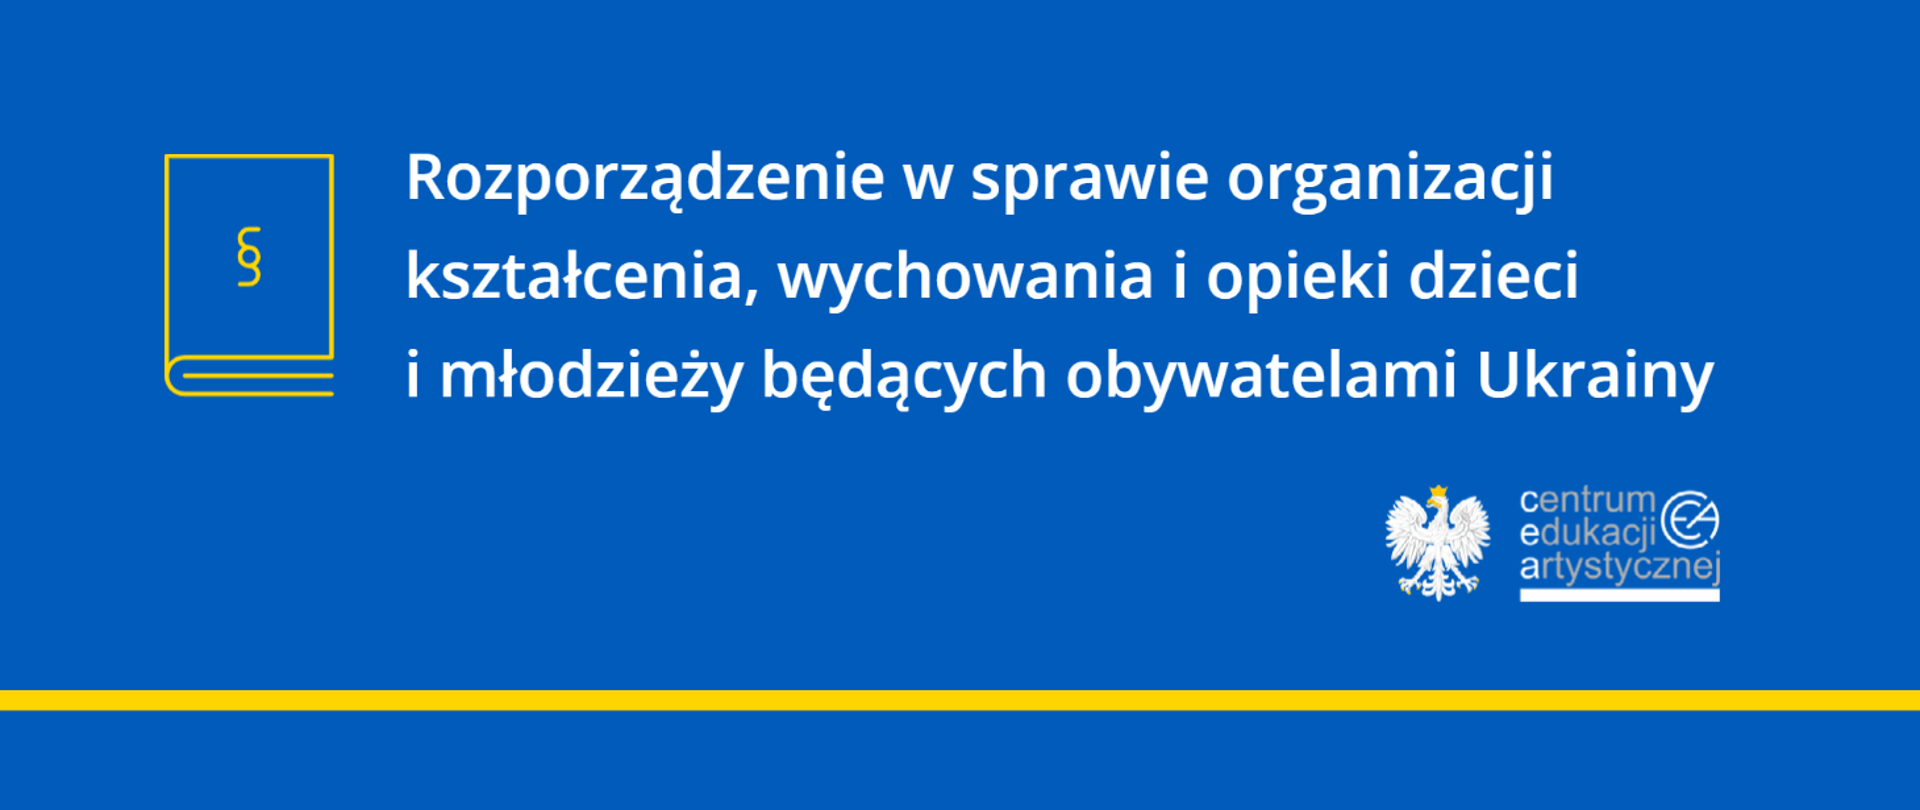 Niebieska grafika z tekstem "Rozporządzenie w sprawie organizacji kształcenia, wychowania i opieki dzieci i młodzieży będących obywatelami Ukrainy" oraz logo CEA z prawej strony i ikoną książki prawniczej z prawej